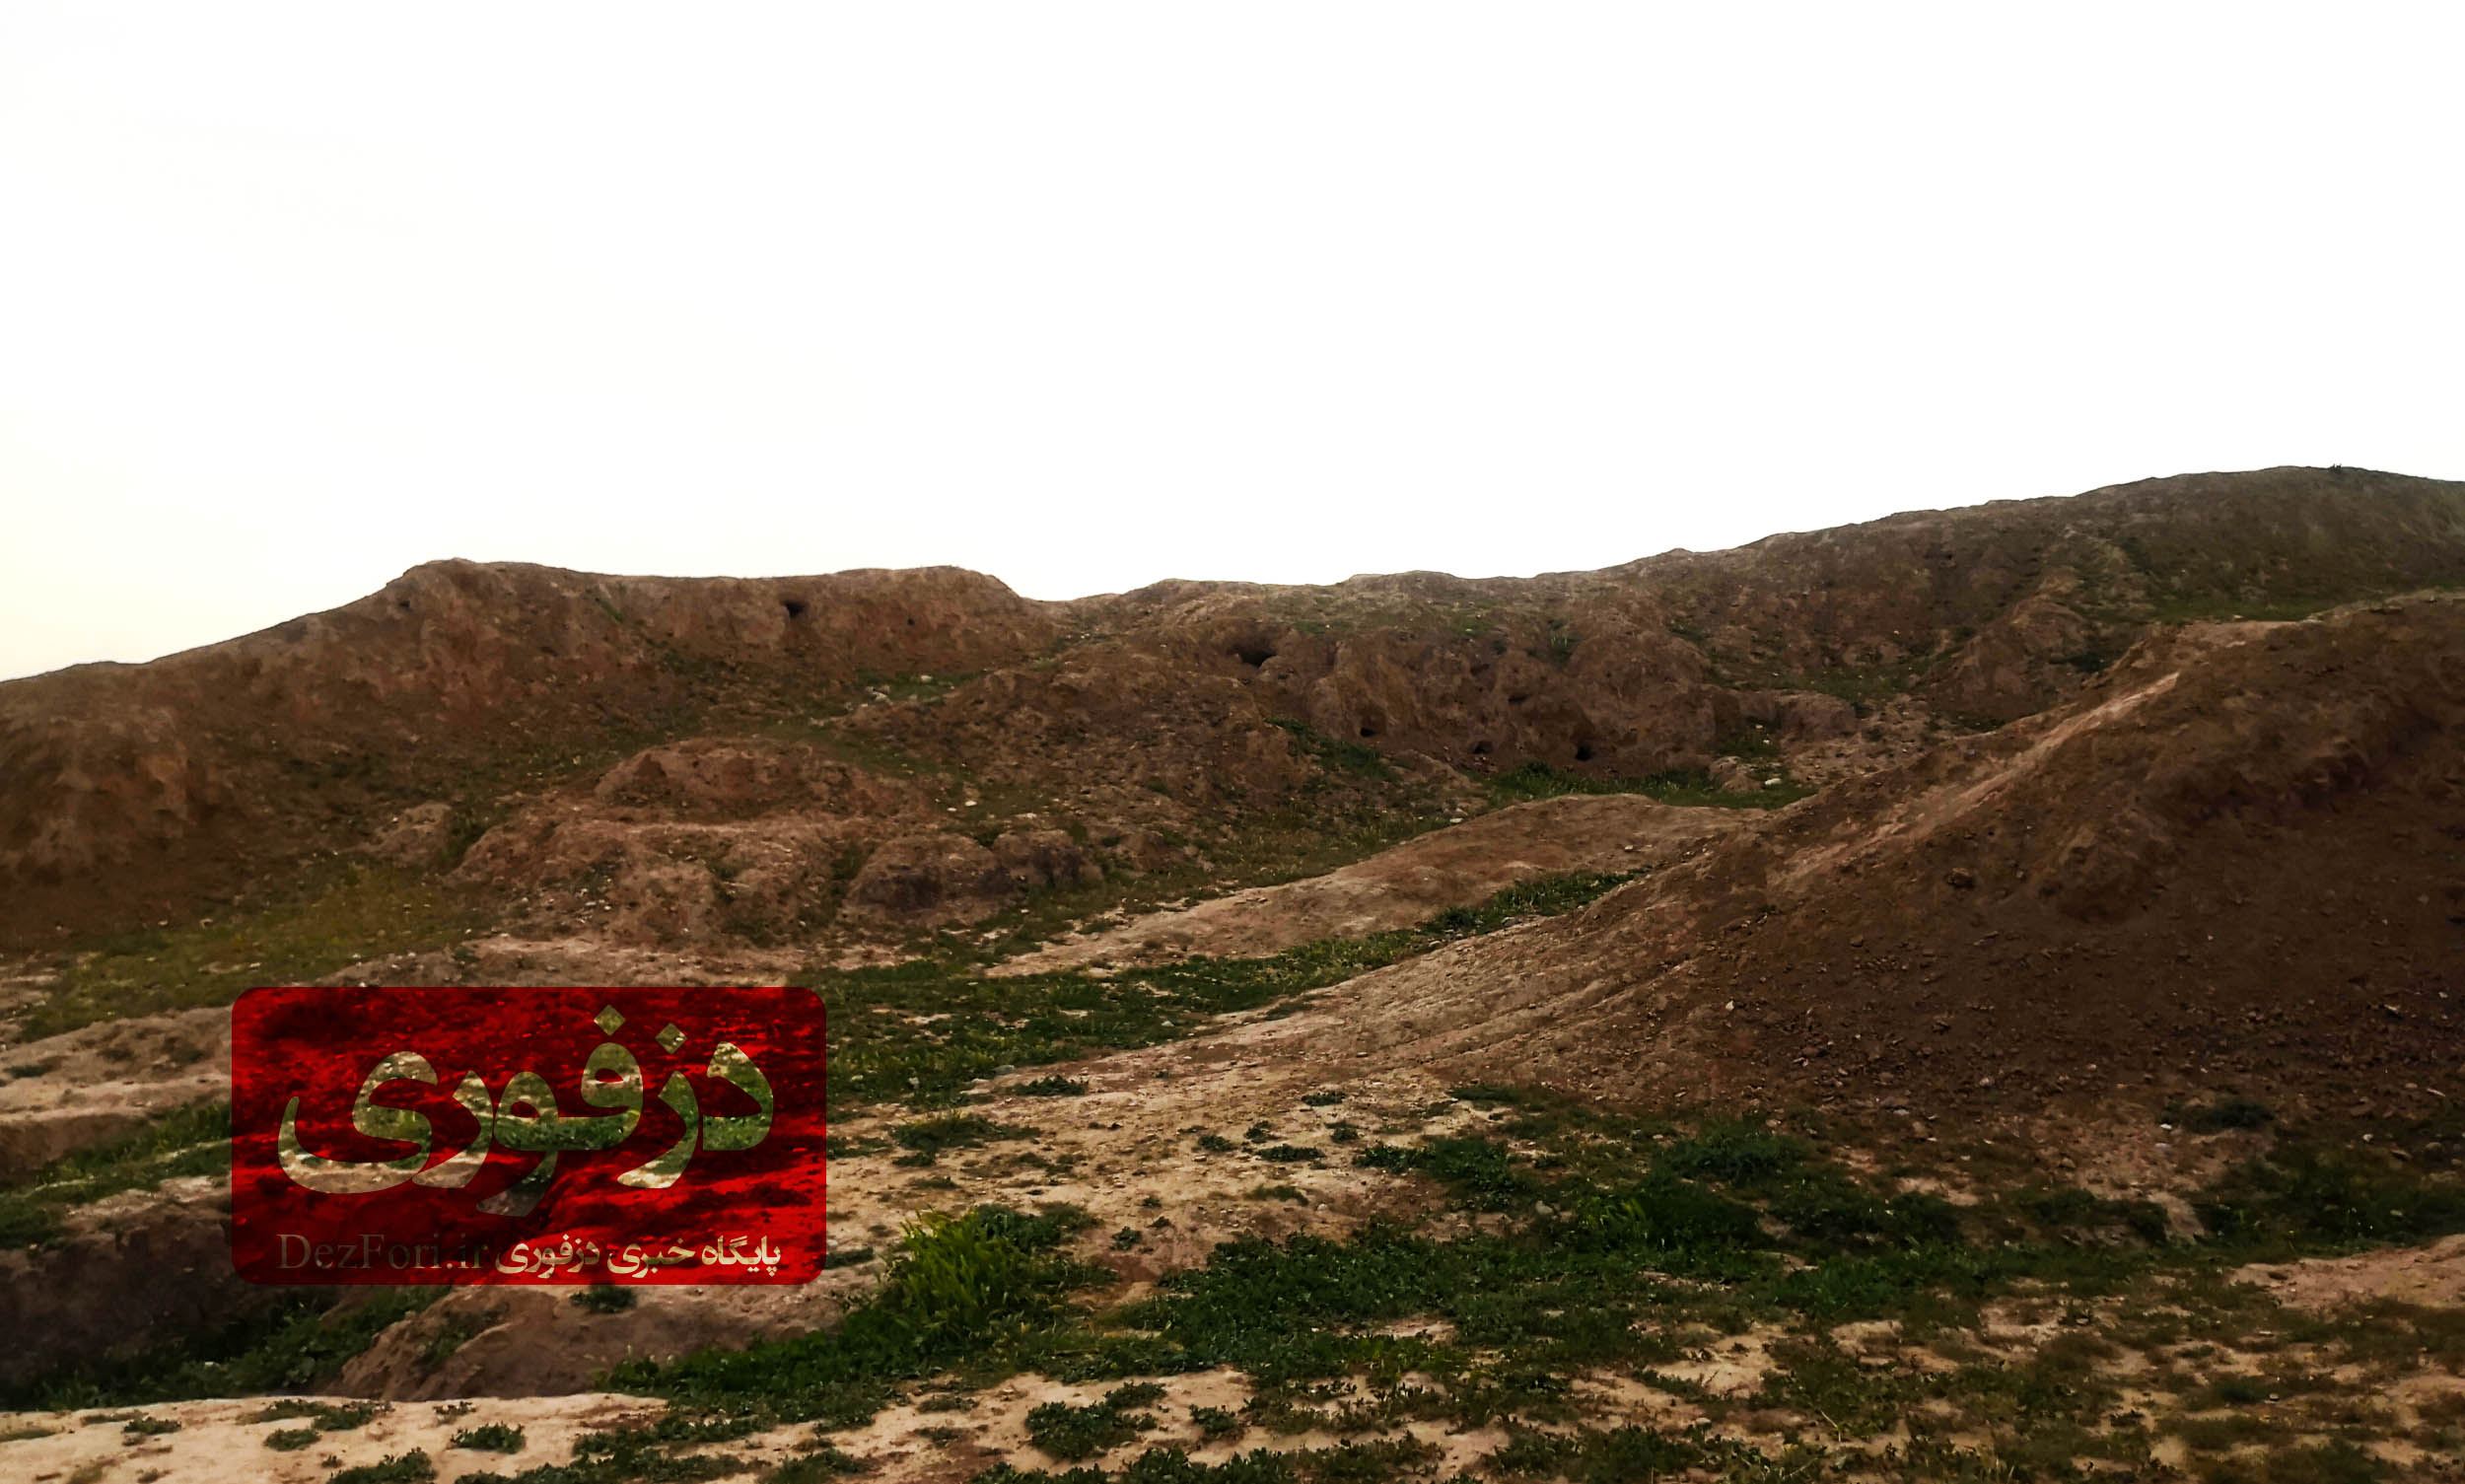 چغامیش کجاست؟ گزارش تصویری از تپه باستانی چغامیش دزفول - دزفوری | پایگاه  خبری دزفول